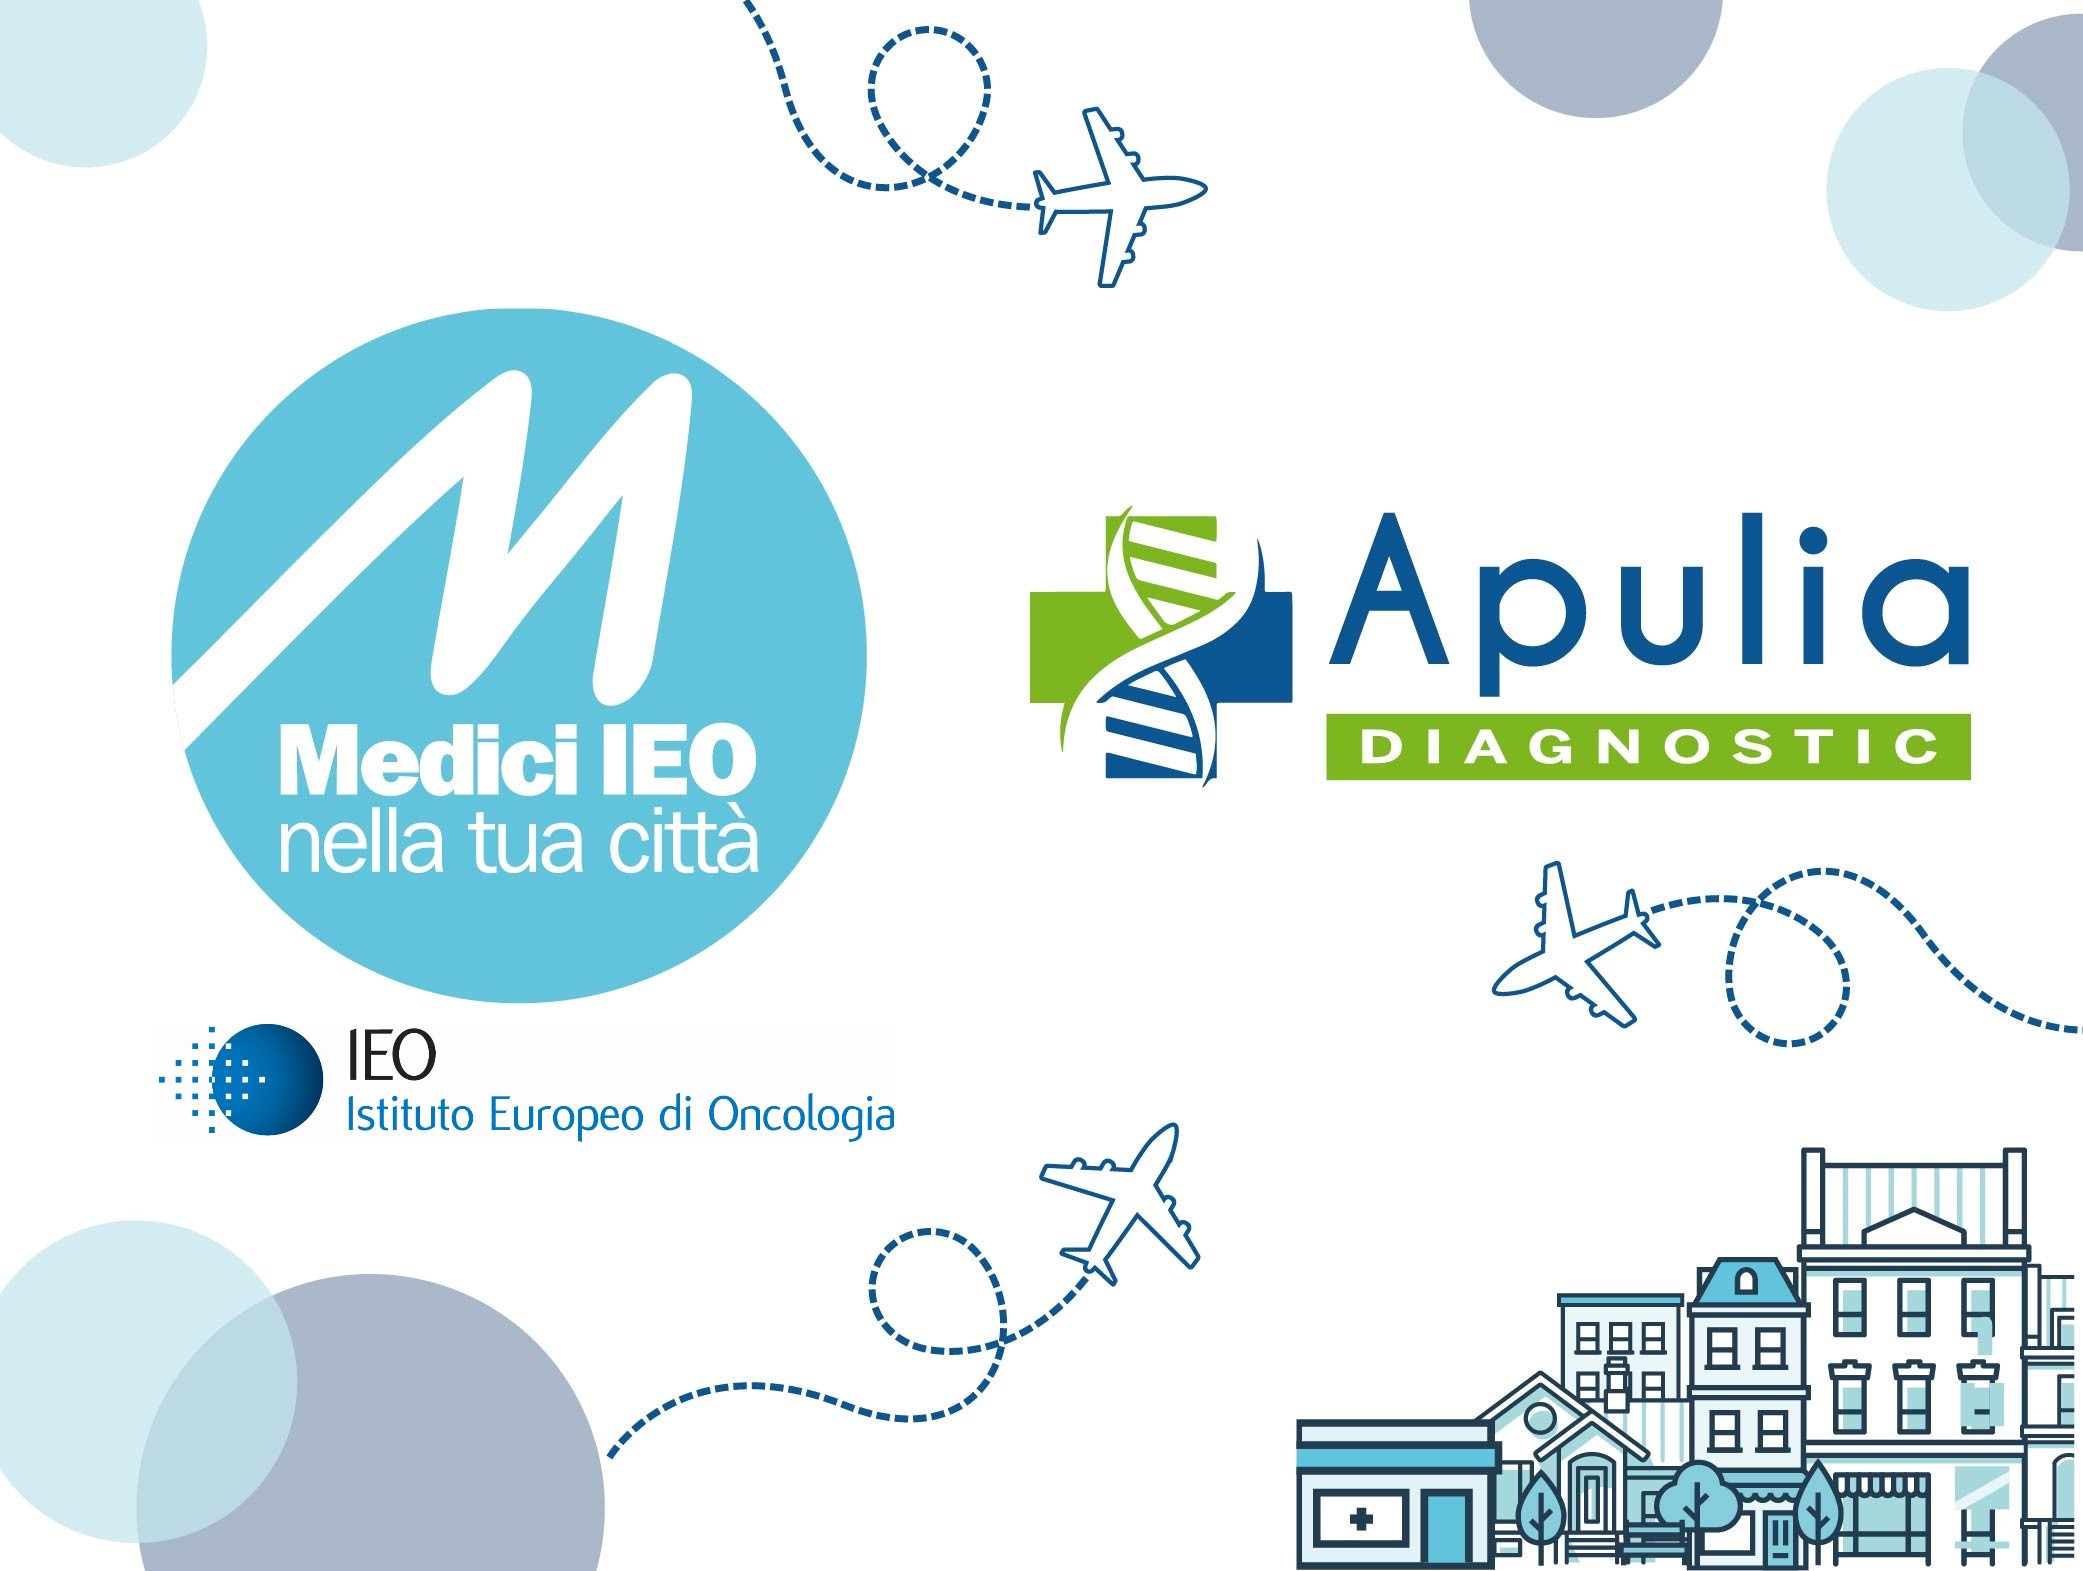 Apulia Diagnostic e Istituto Europeo di Oncologia (IEO) insieme per l’eccellenza sanitaria